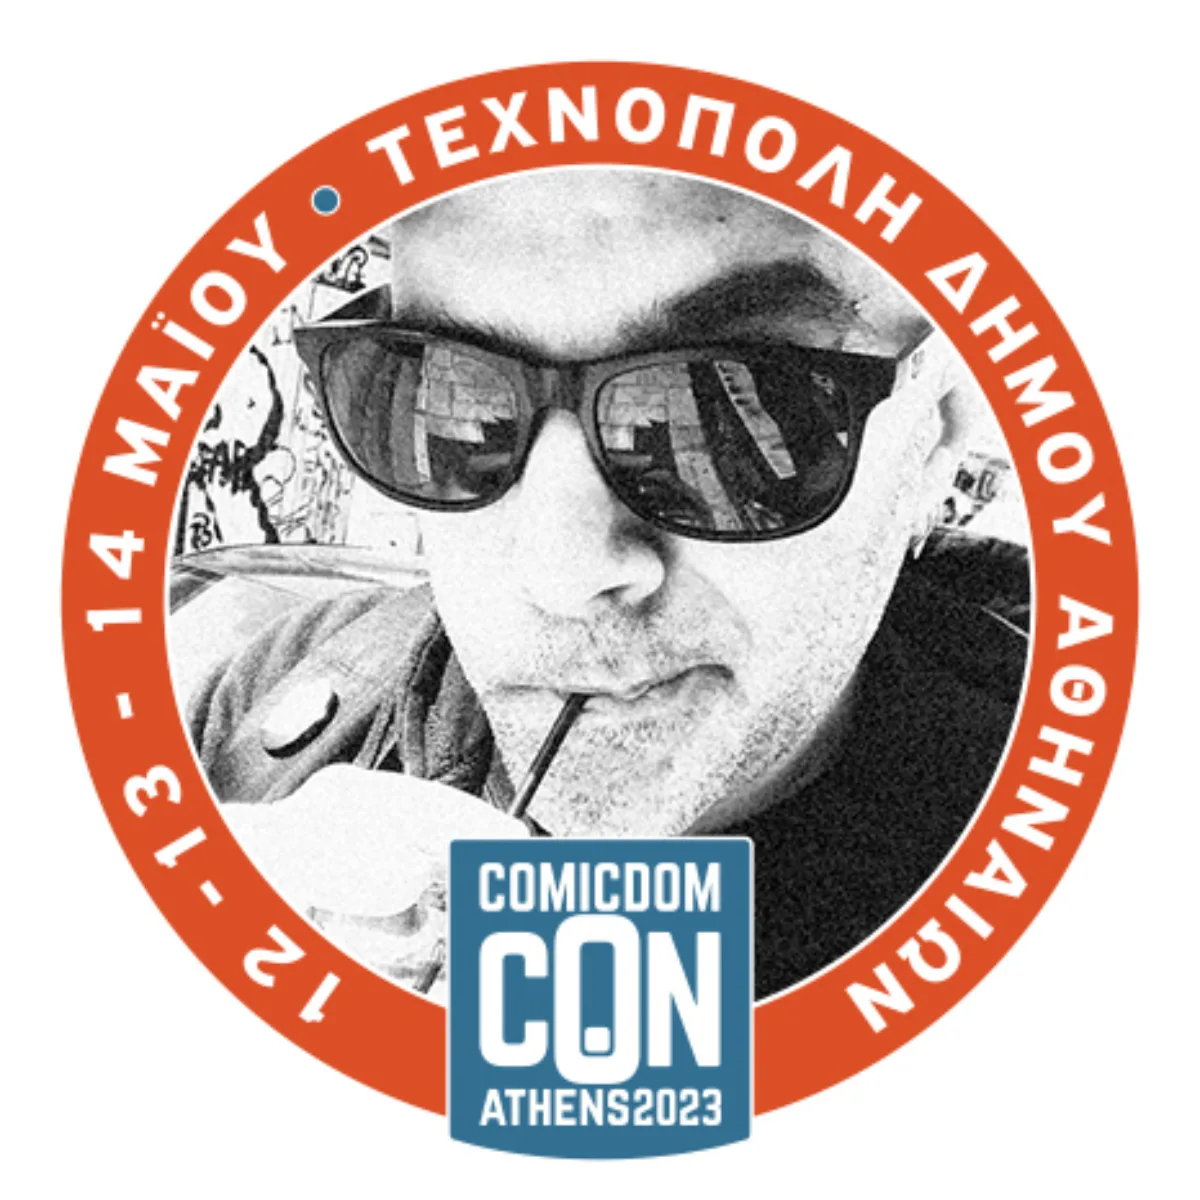 Comicdom Con Athens 2023